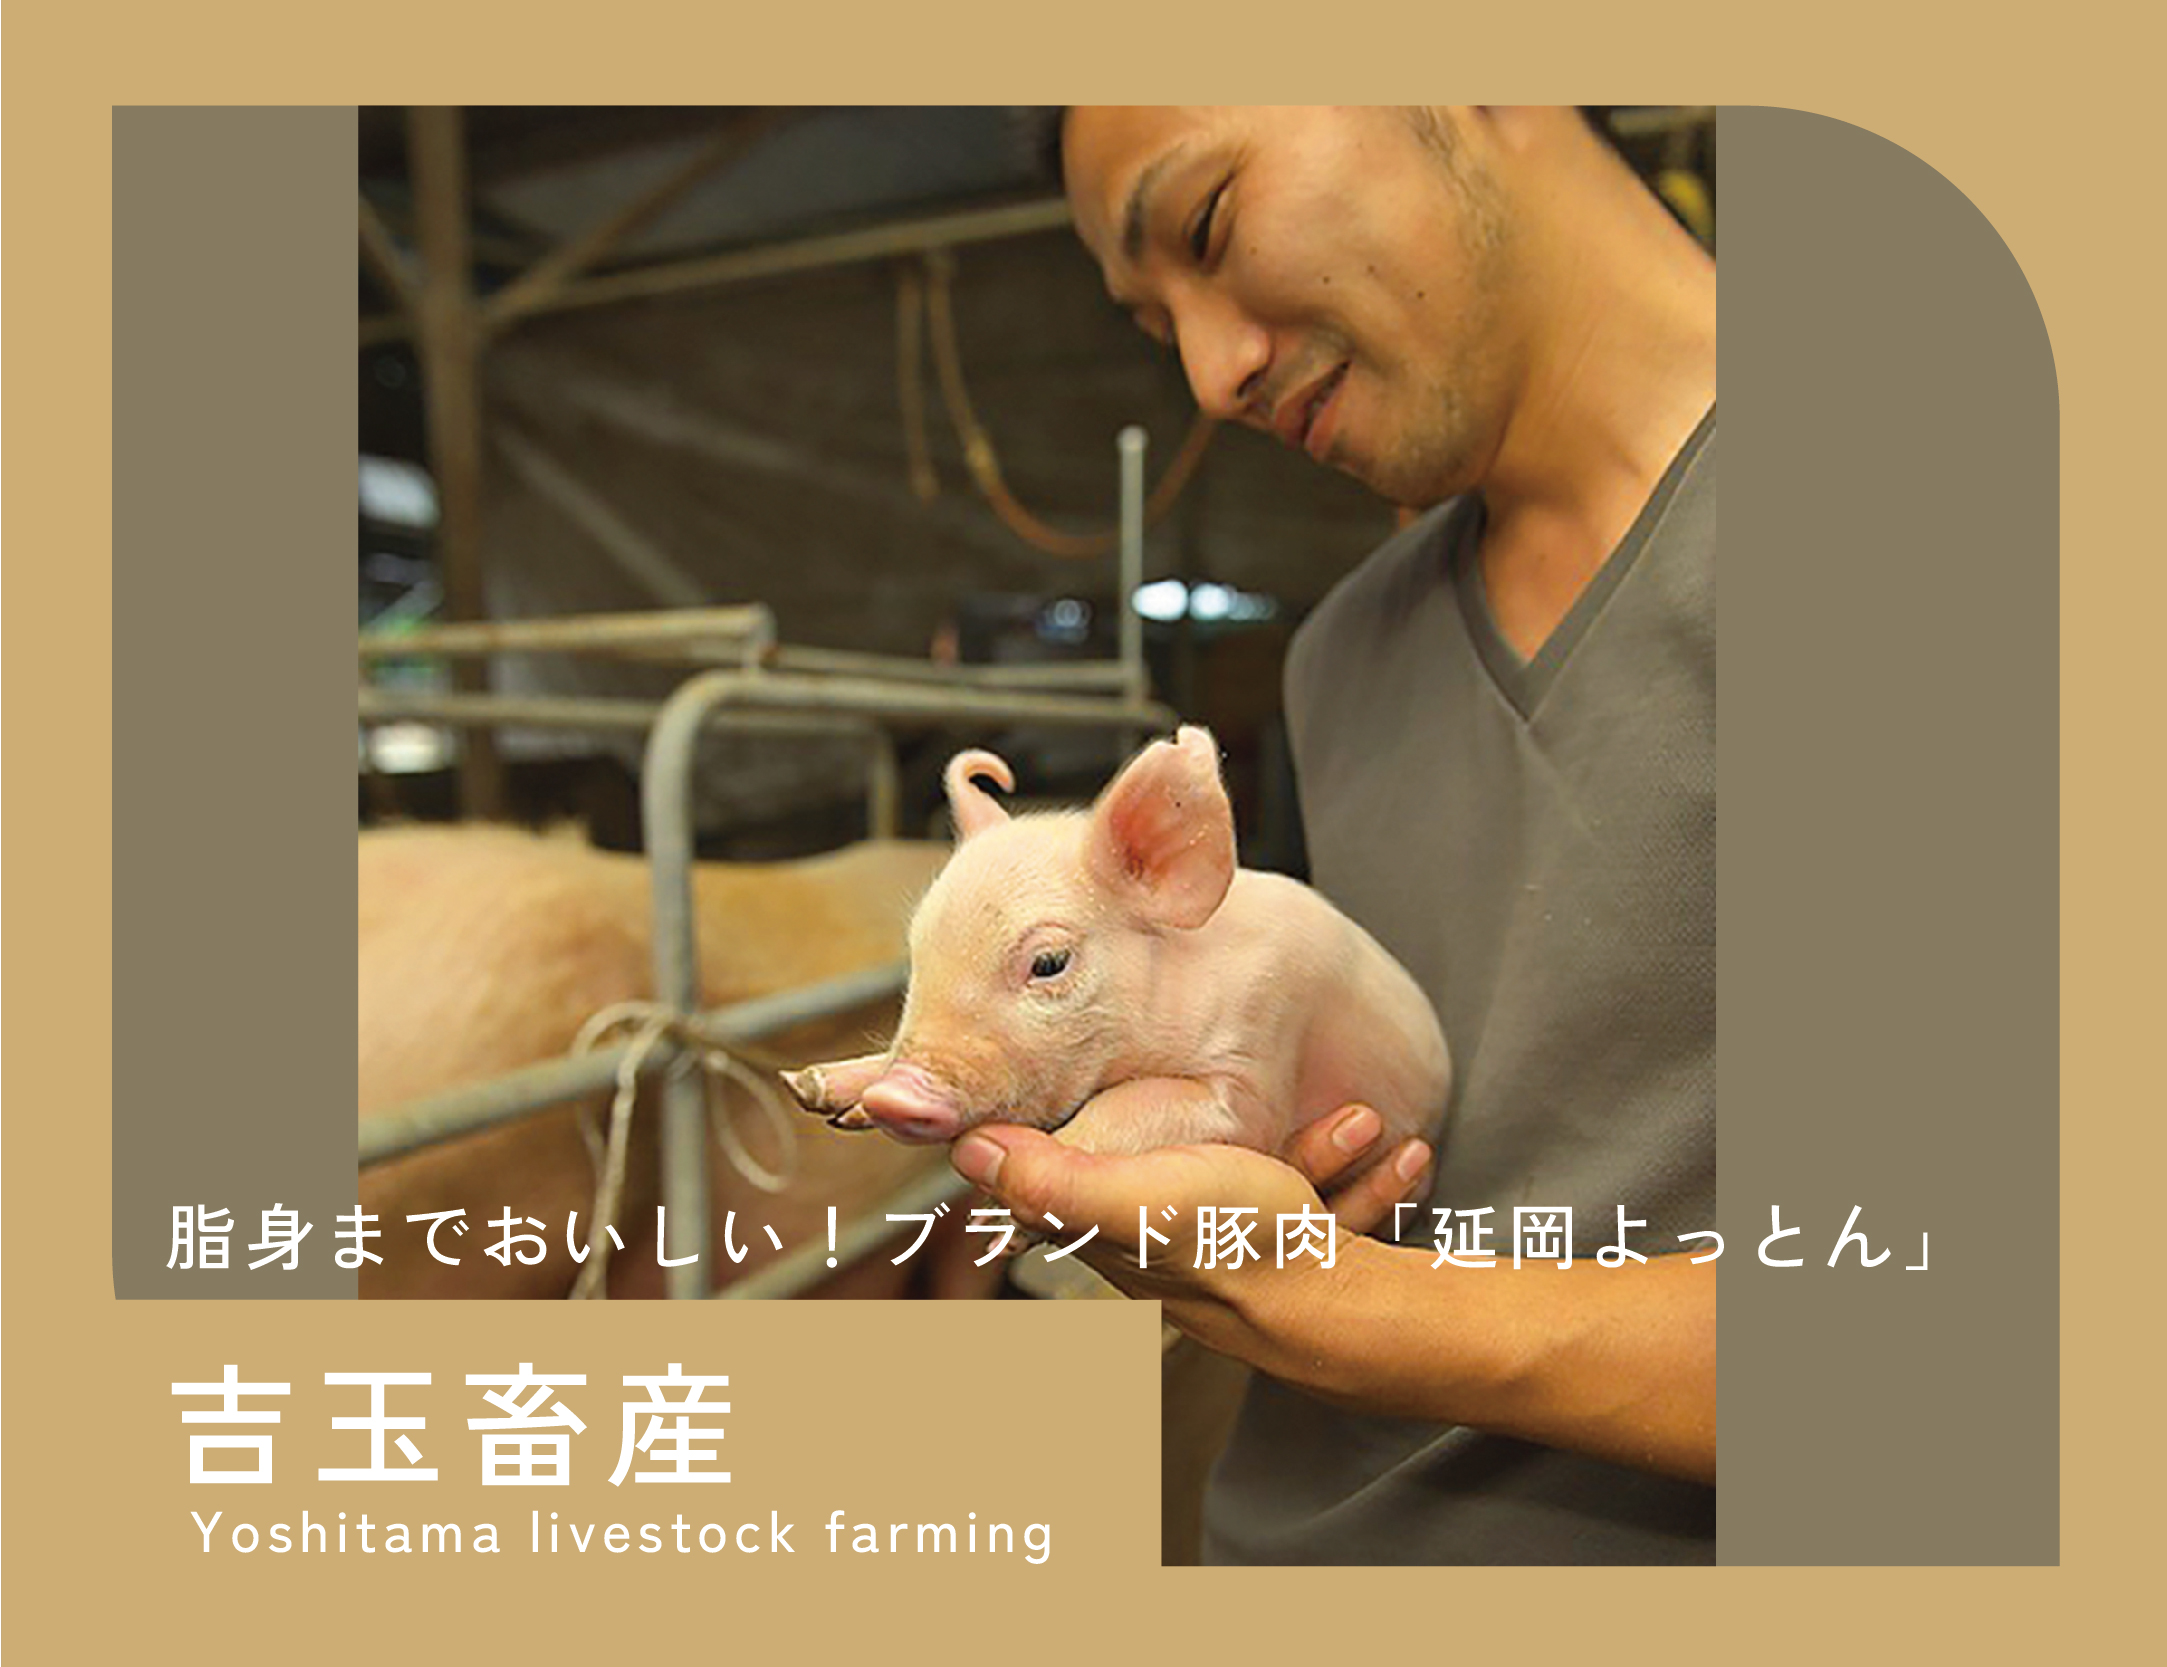 Yoshidama livestock farming